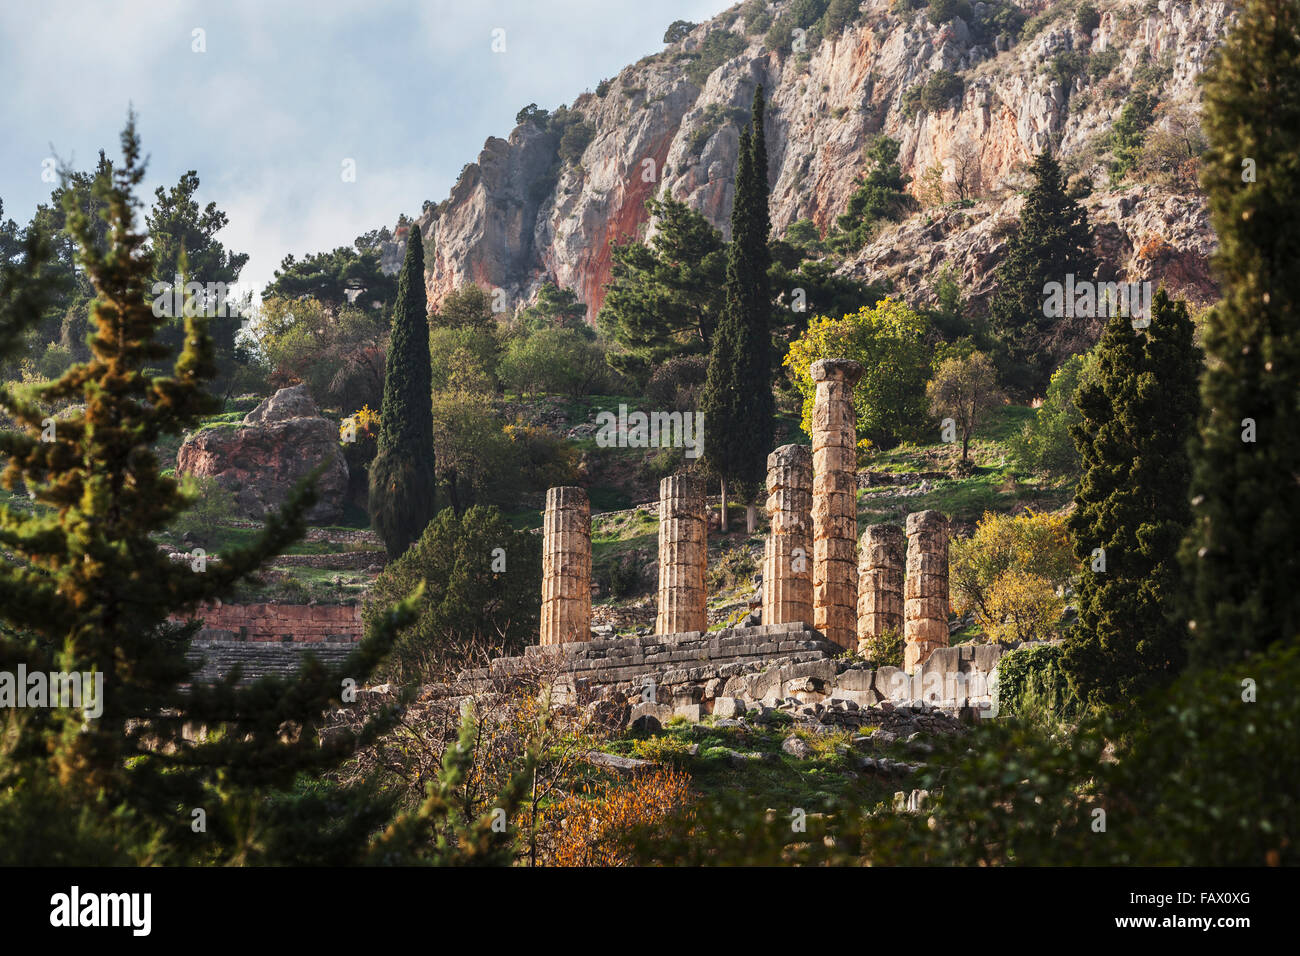 Temple of Apollo; Delphi, Greece Stock Photo